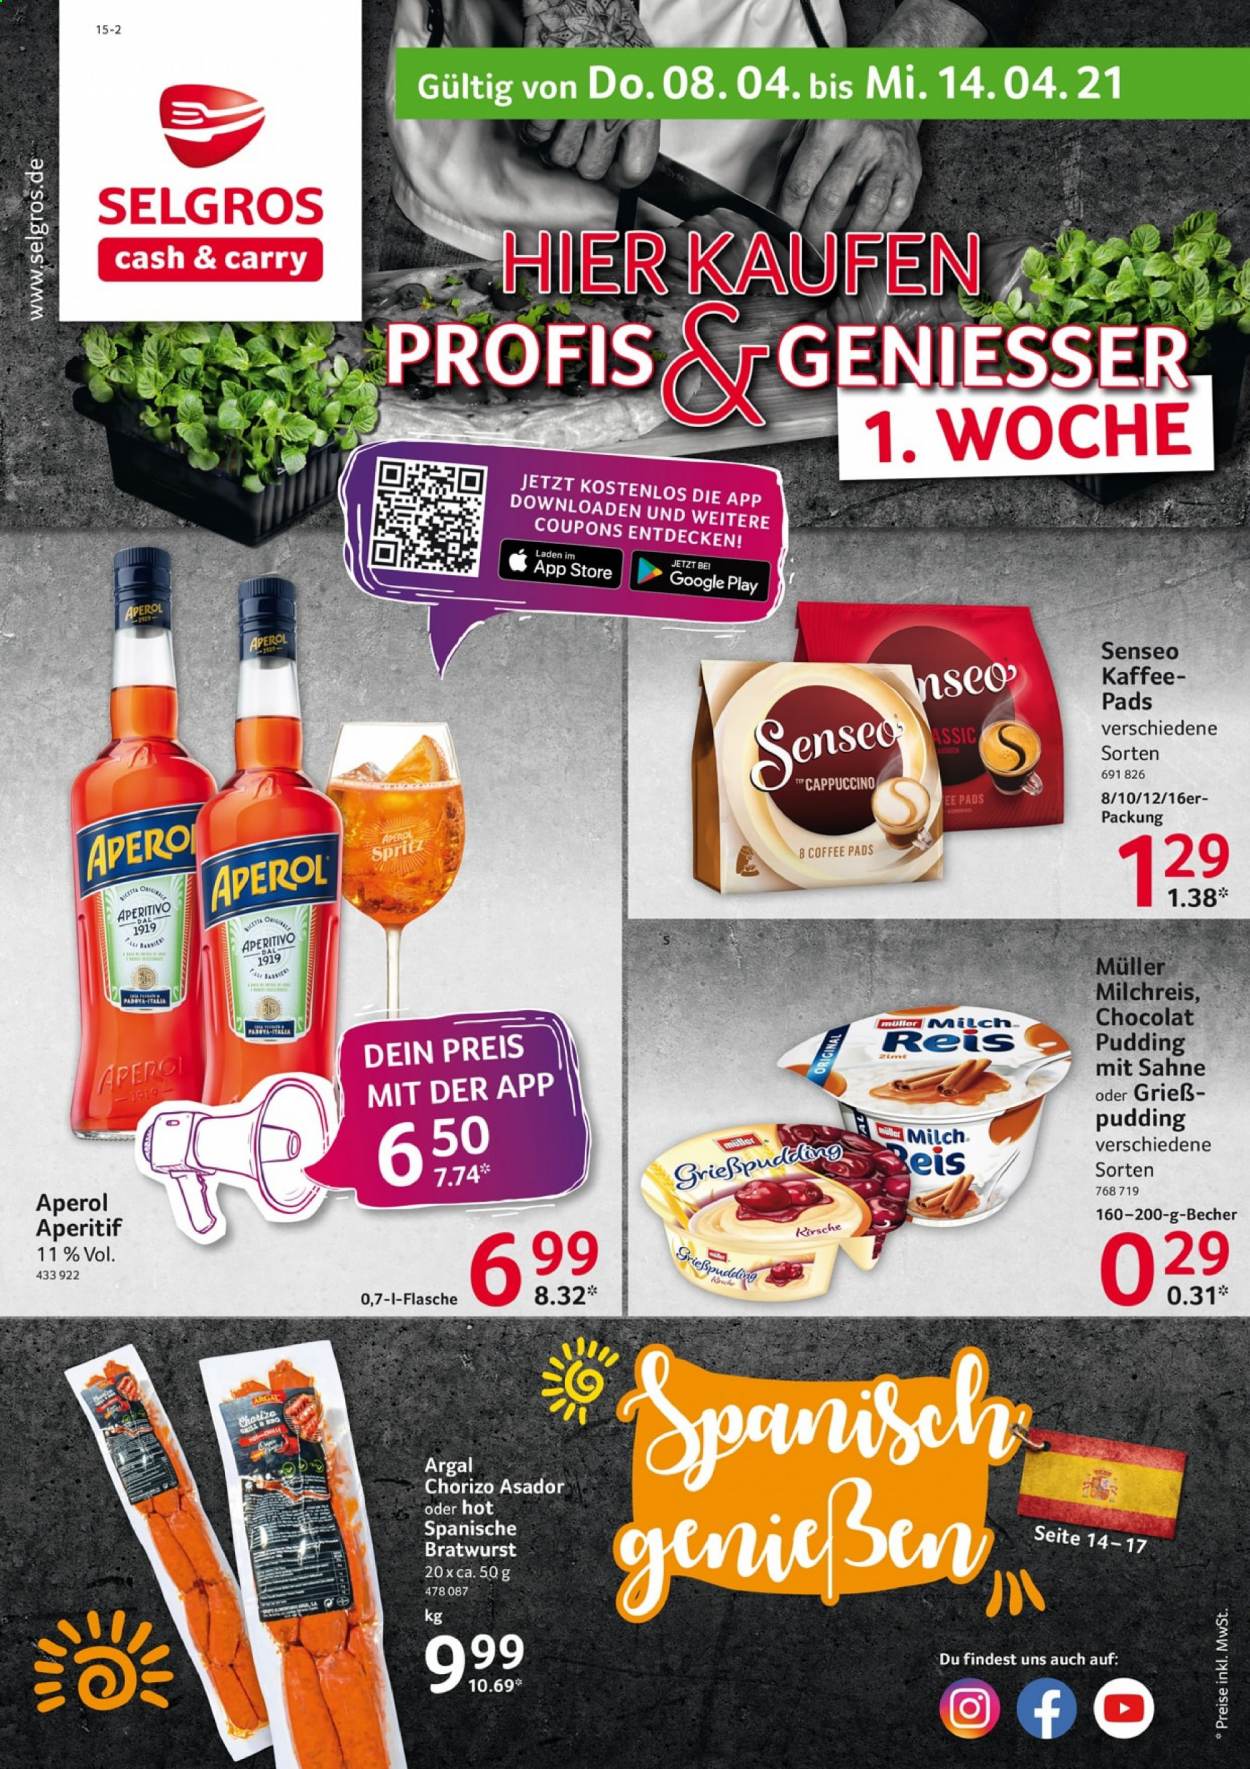 thumbnail - Prospekte Selgros - 8.04.2021 - 14.04.2021 - Produkte in Aktion - Chorizo, Bratwurst, Pudding, Milchreis, Müller, Milch, Reis, Senseo, Aperol. Seite 1.